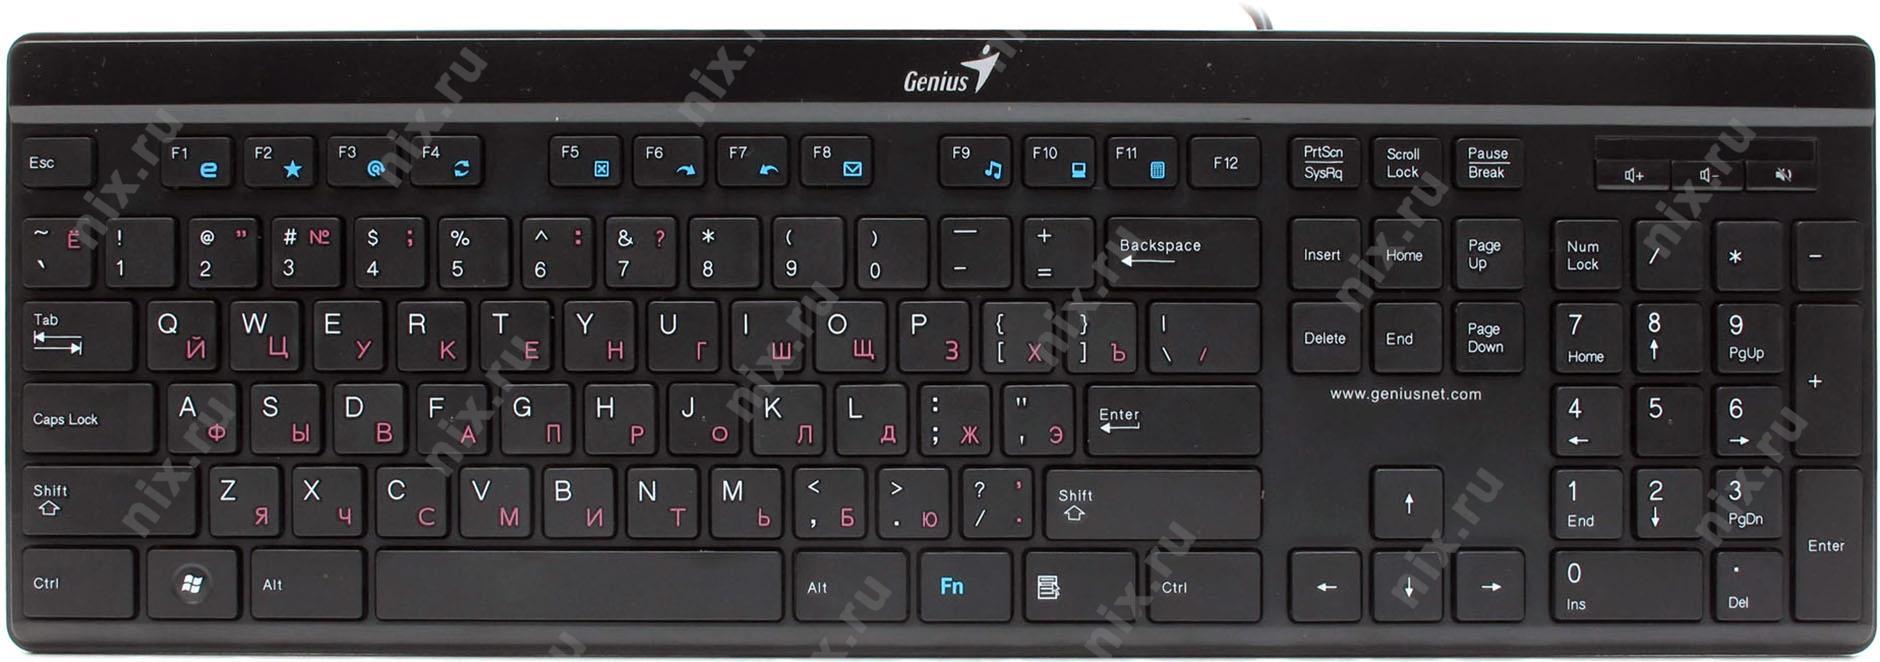 Драйвер для клавиатуры genius slimstar i222 скачать